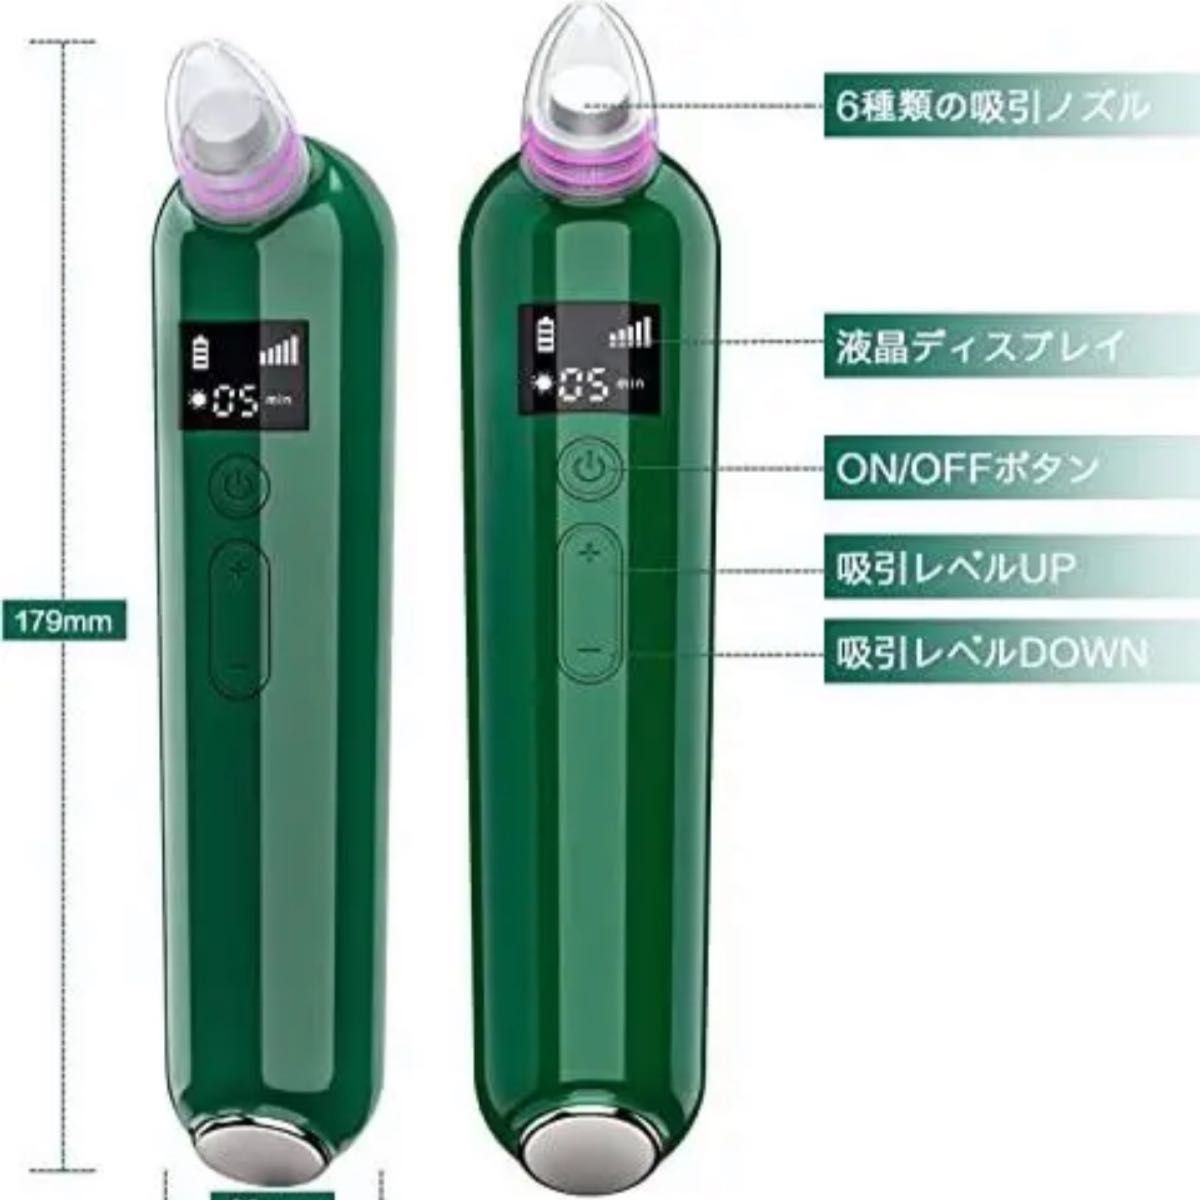 毛穴吸引器 美顔器 5階段吸引力 日本語説明書付き 男女兼用